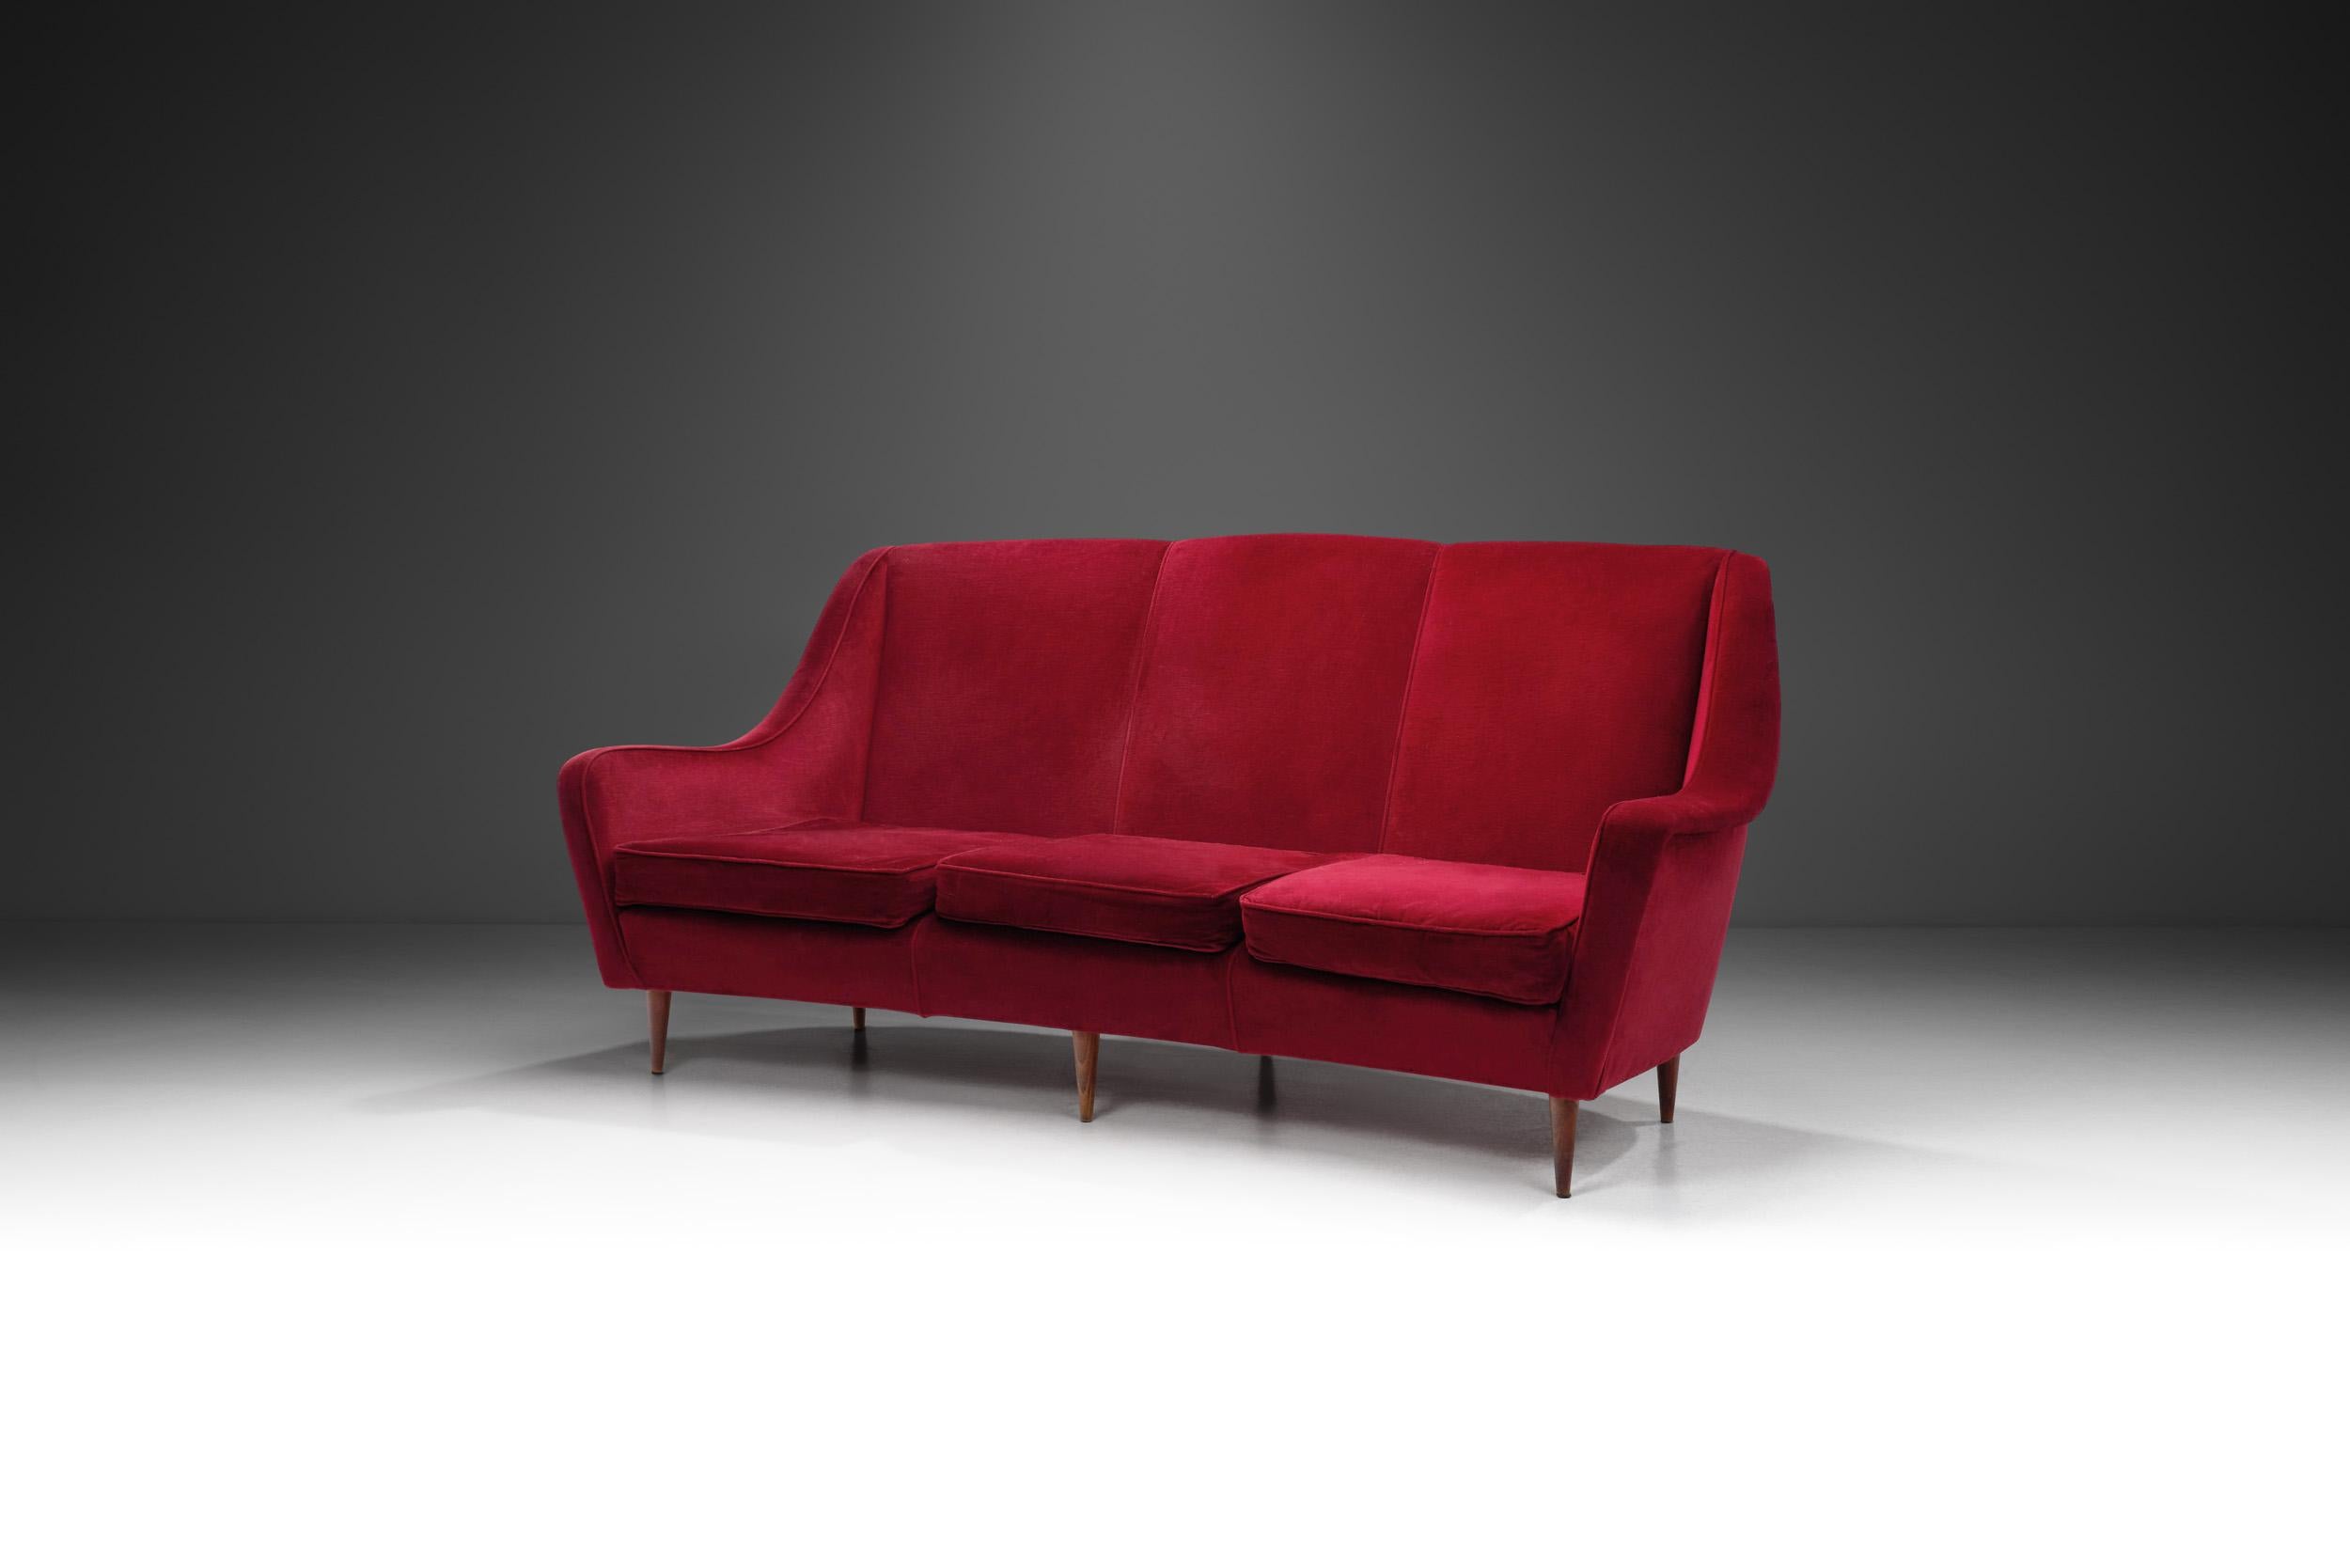 Dieses italienische Sofa aus den 1950er Jahren strahlt zeitlosen Charme und Eleganz aus. Dieses Dreisitzer-Sofa ist mit rotem Samt überzogen und zeigt, warum italienische Möbel aus der Mitte des Jahrhunderts nach wie vor attraktiv sind. Die Möbel